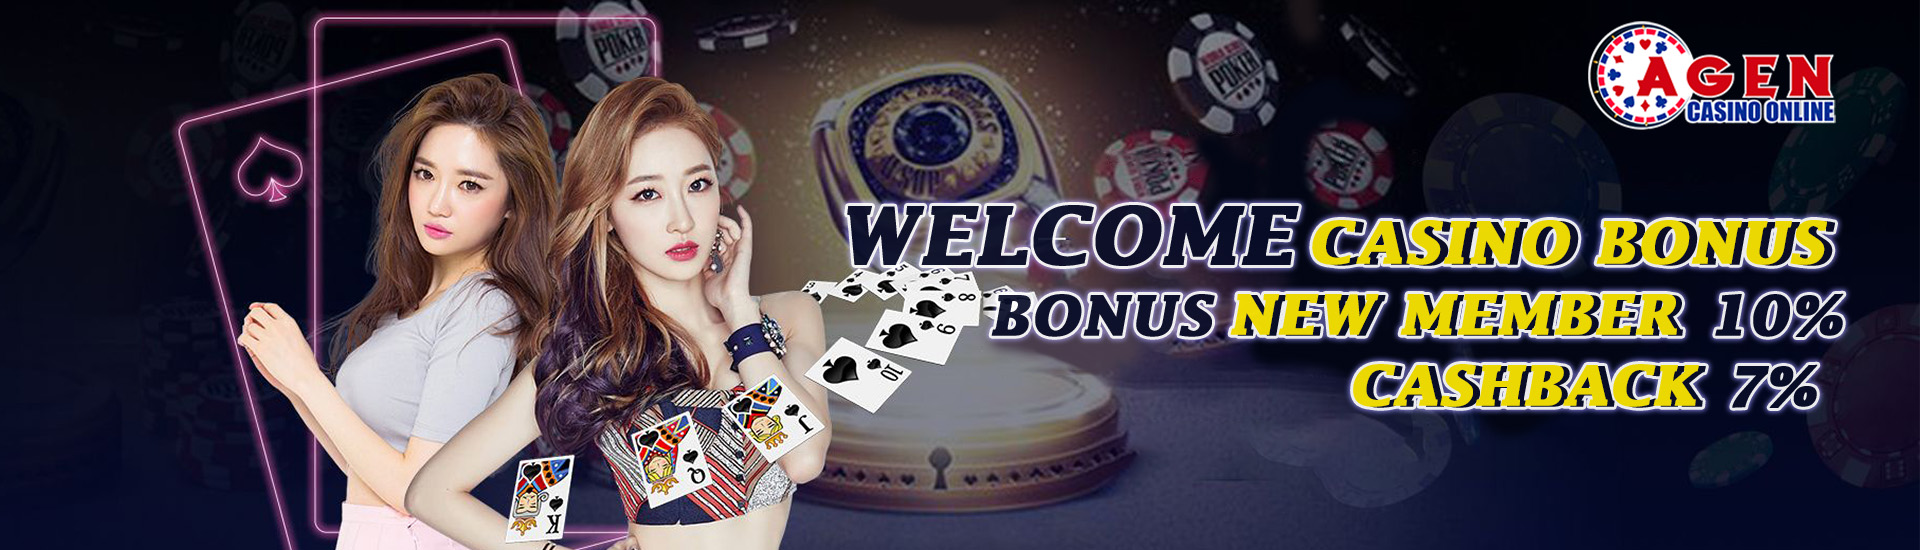 Agen Casino Online Desktop